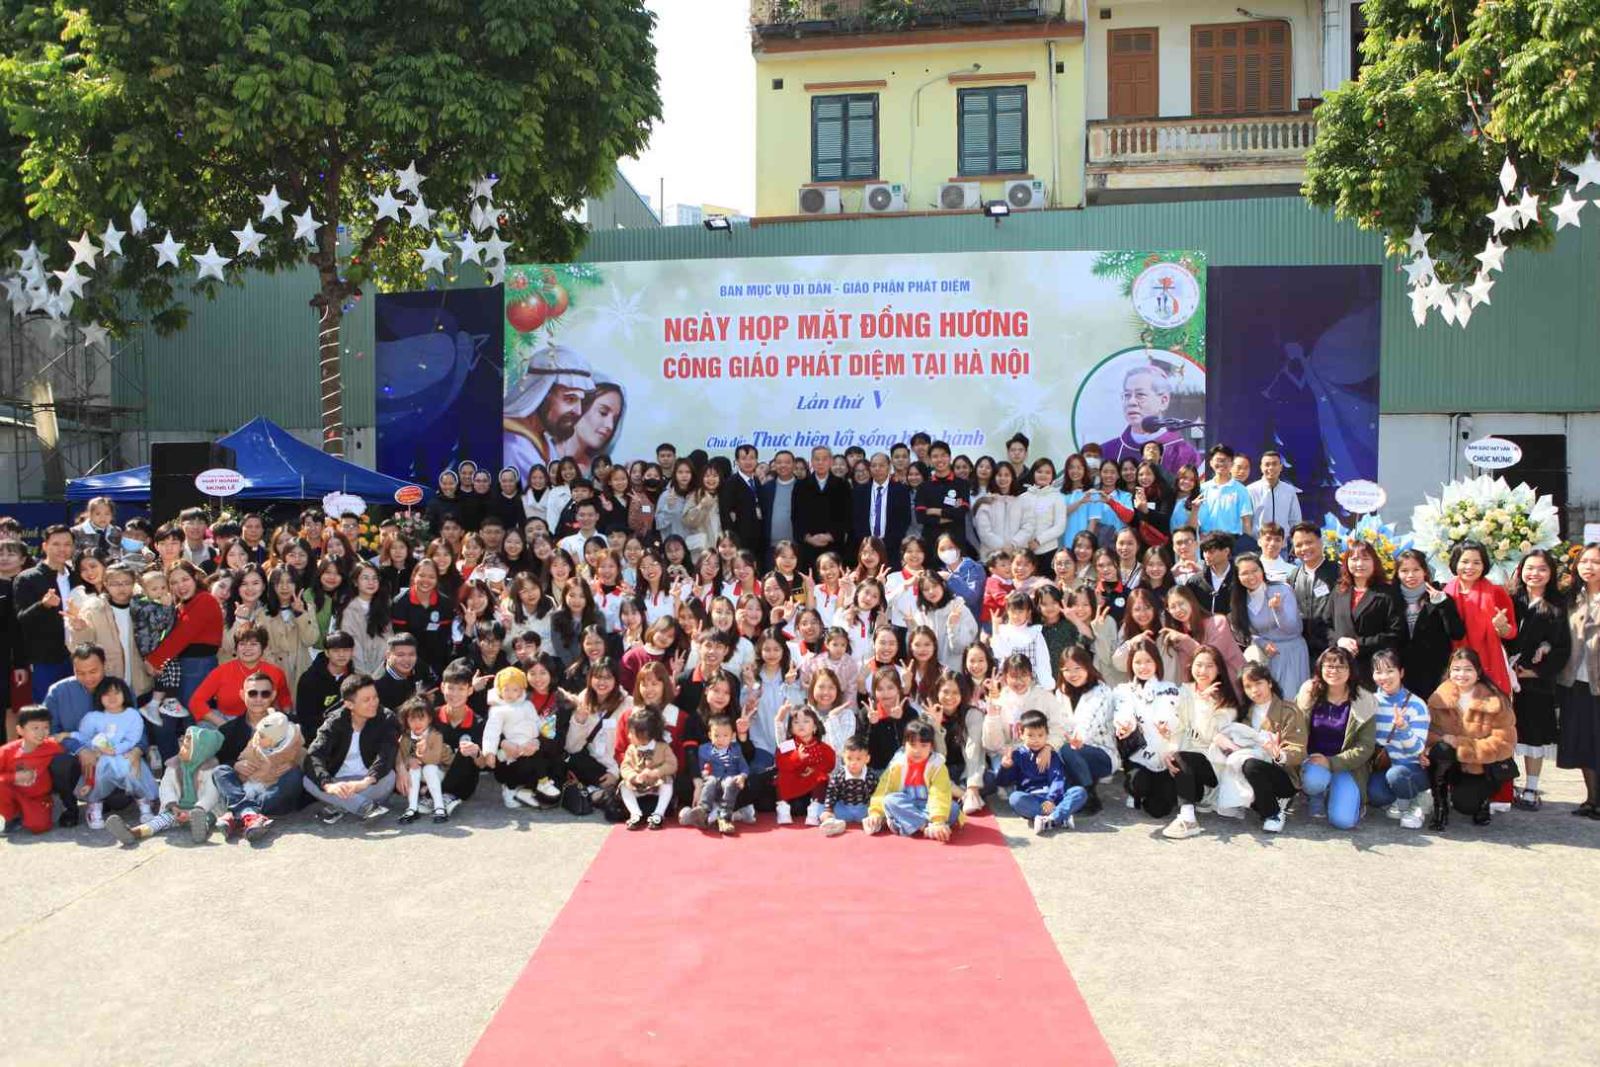 GP.Phát Diệm - Ngày Gặp mặt Di dân-Đồng hương Công giáo Phát Diệm tại Hà Nội